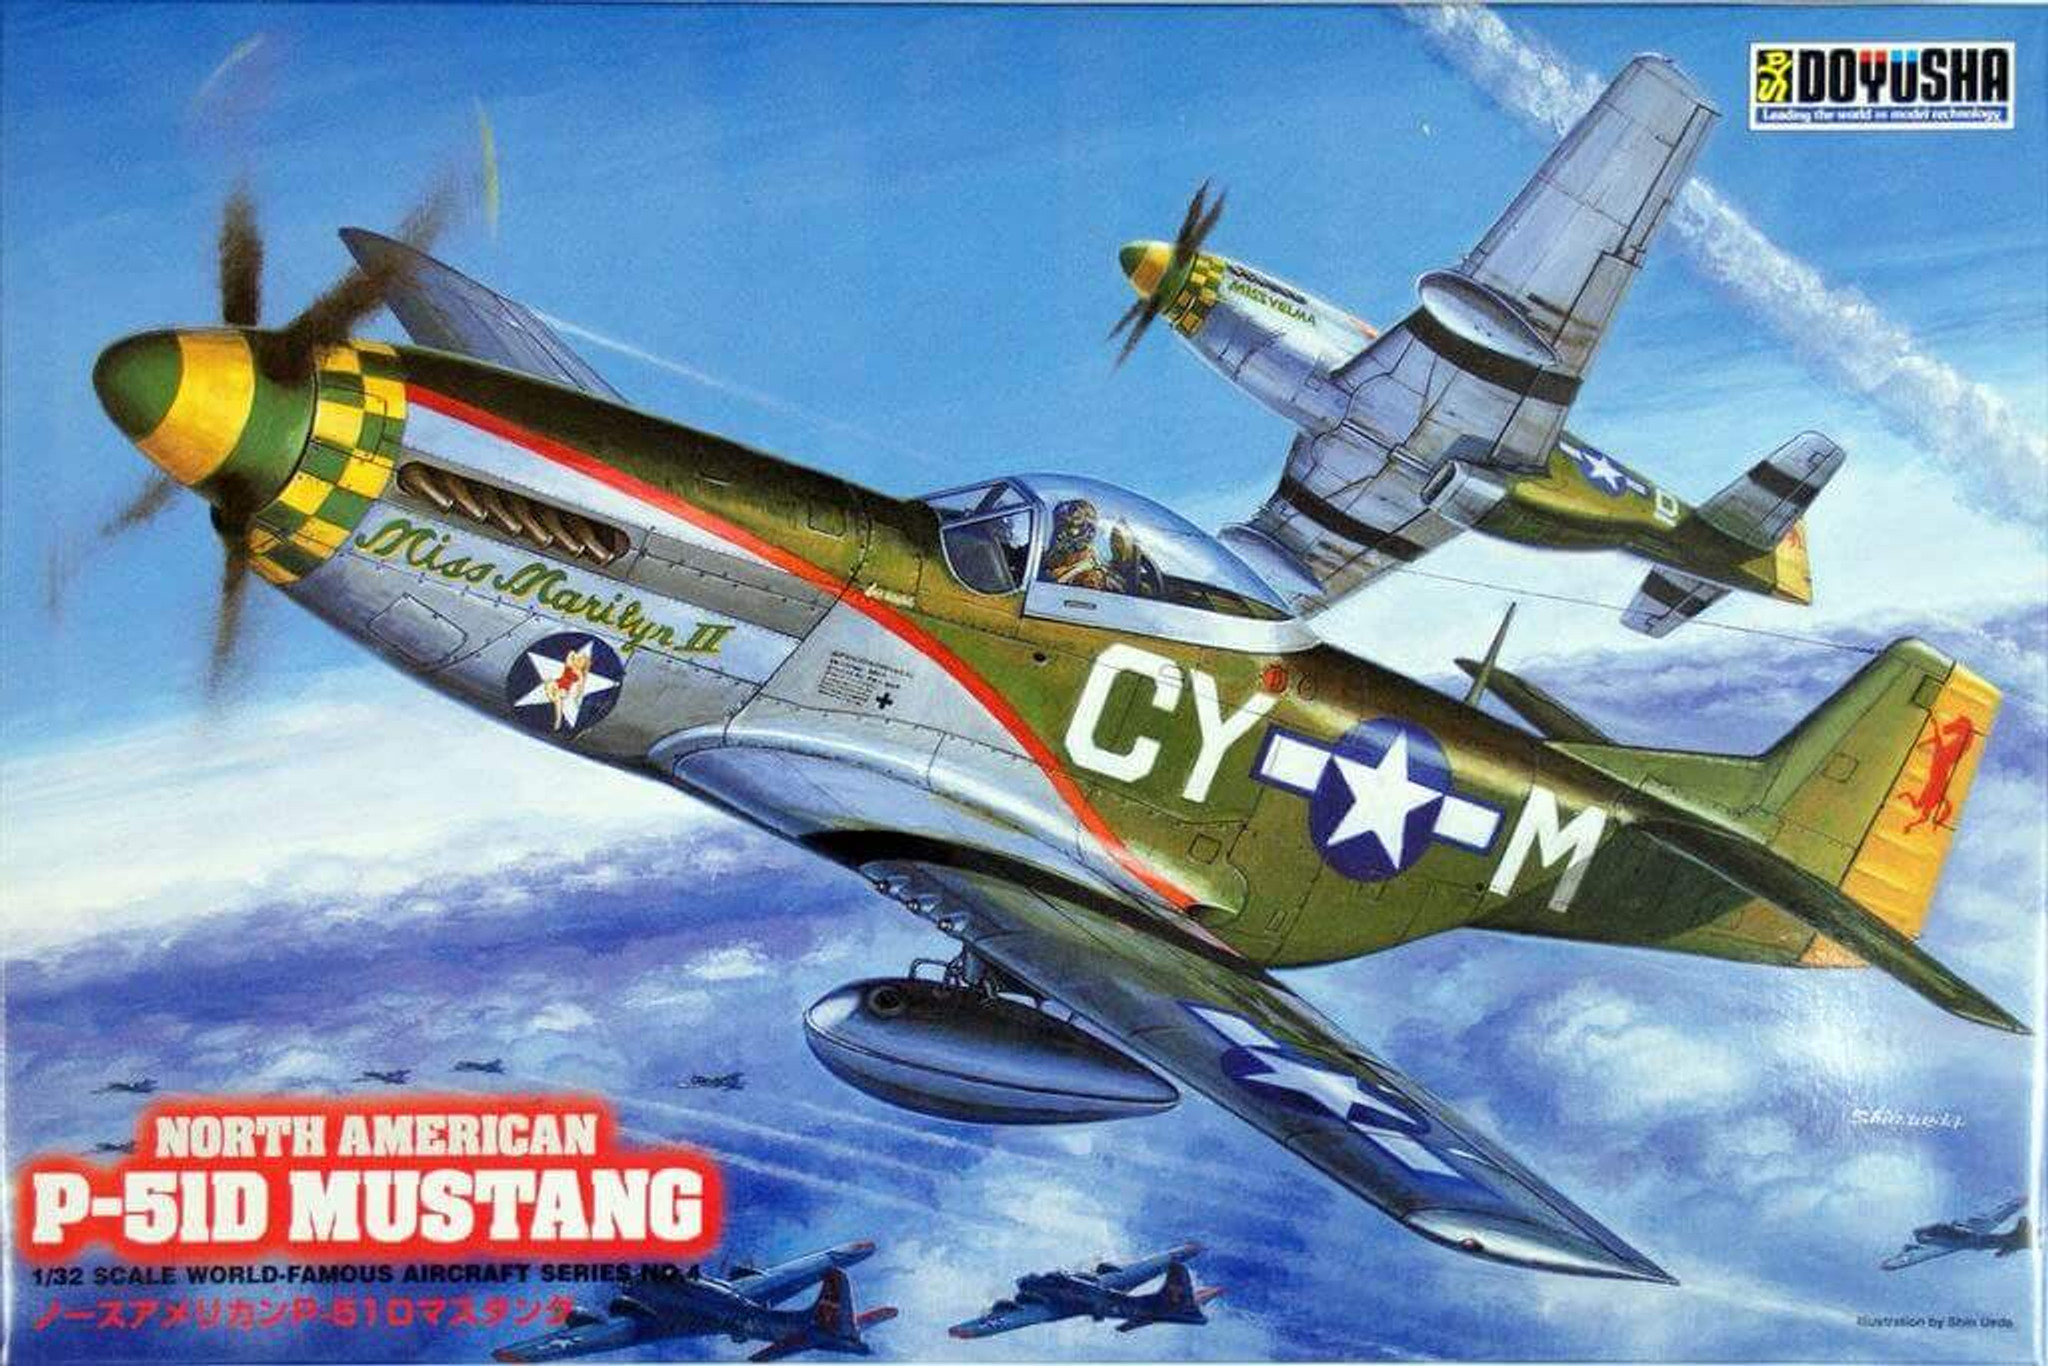 DOY32MUS Doyusha 1/32nd P-51D MUSTANG